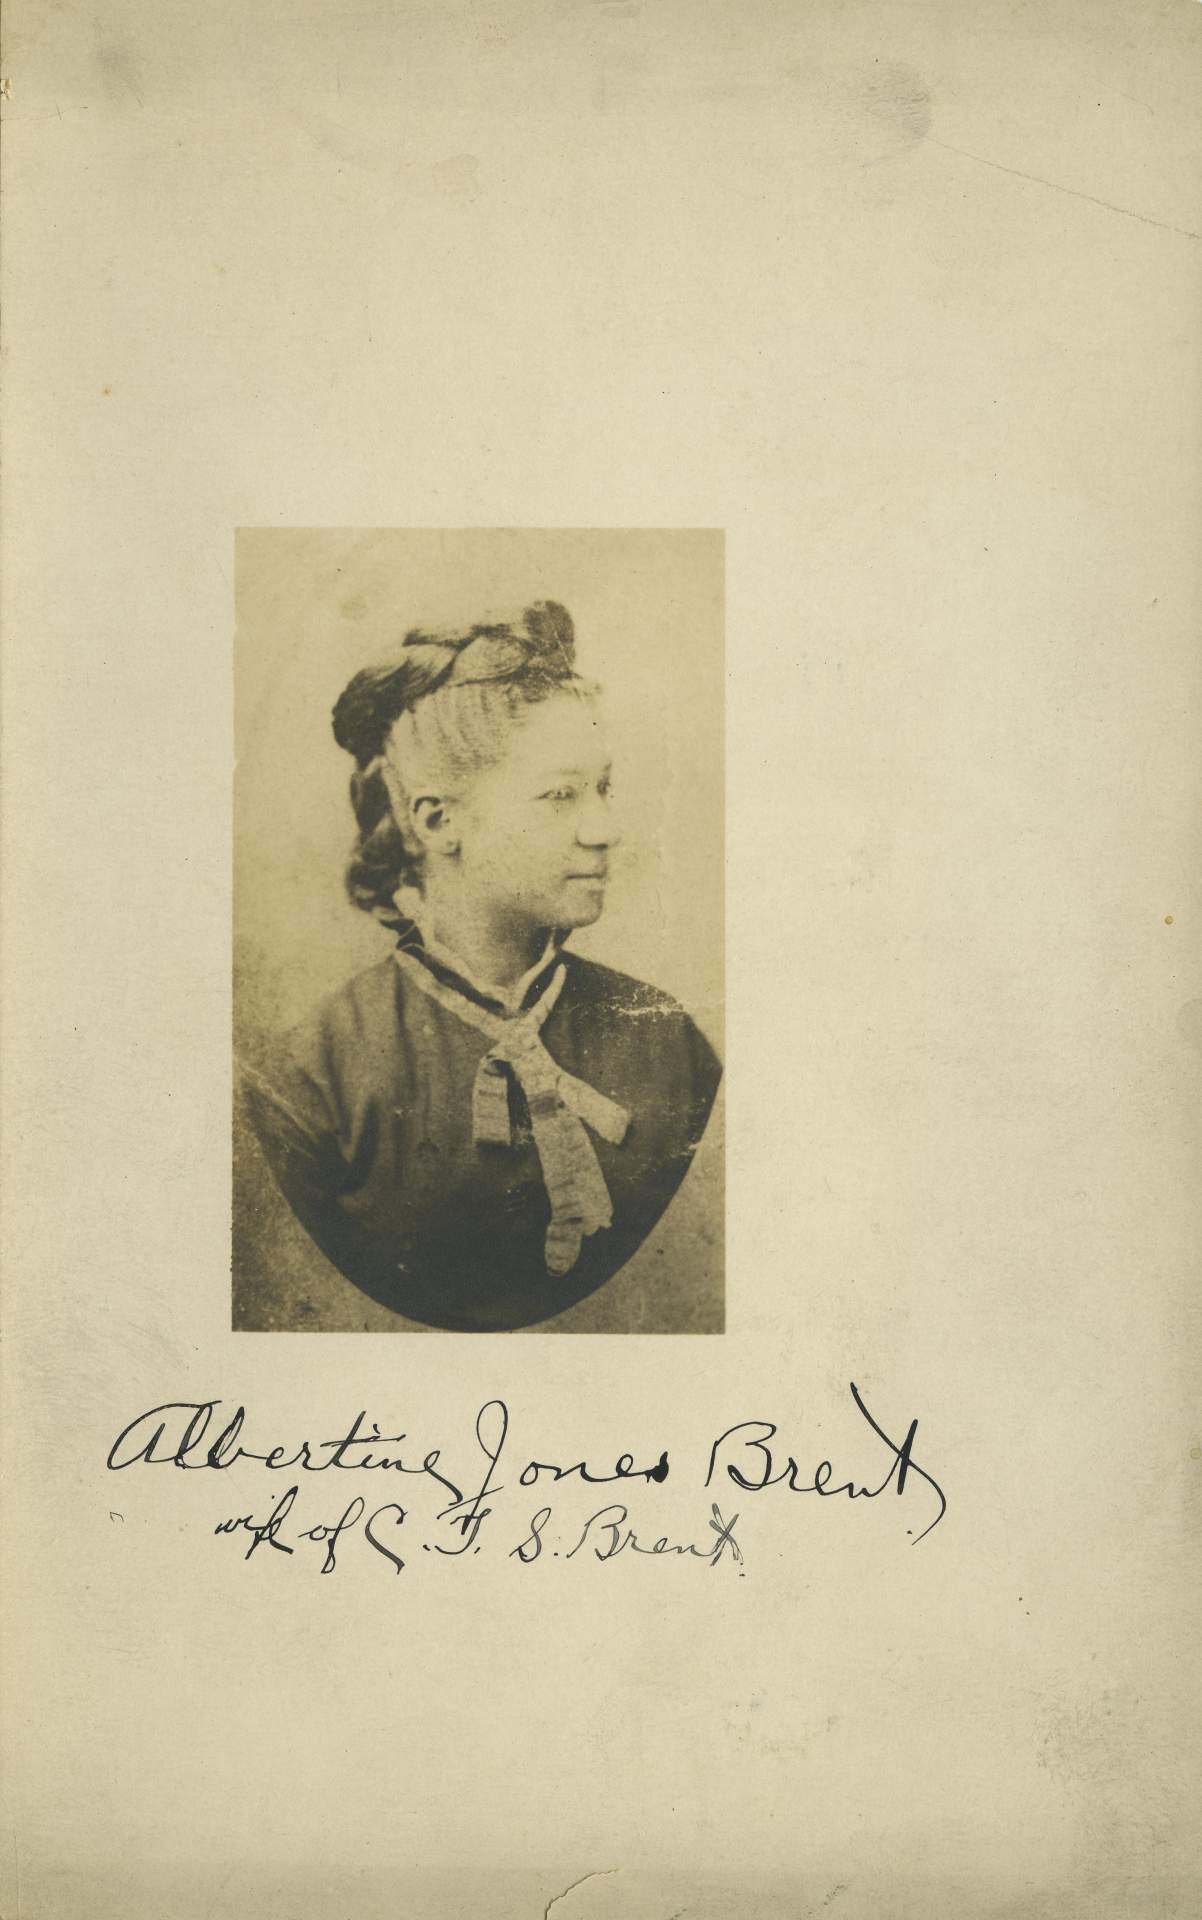 Portrait of “Albertine Jones Brent / wife of C. T. S. Brent